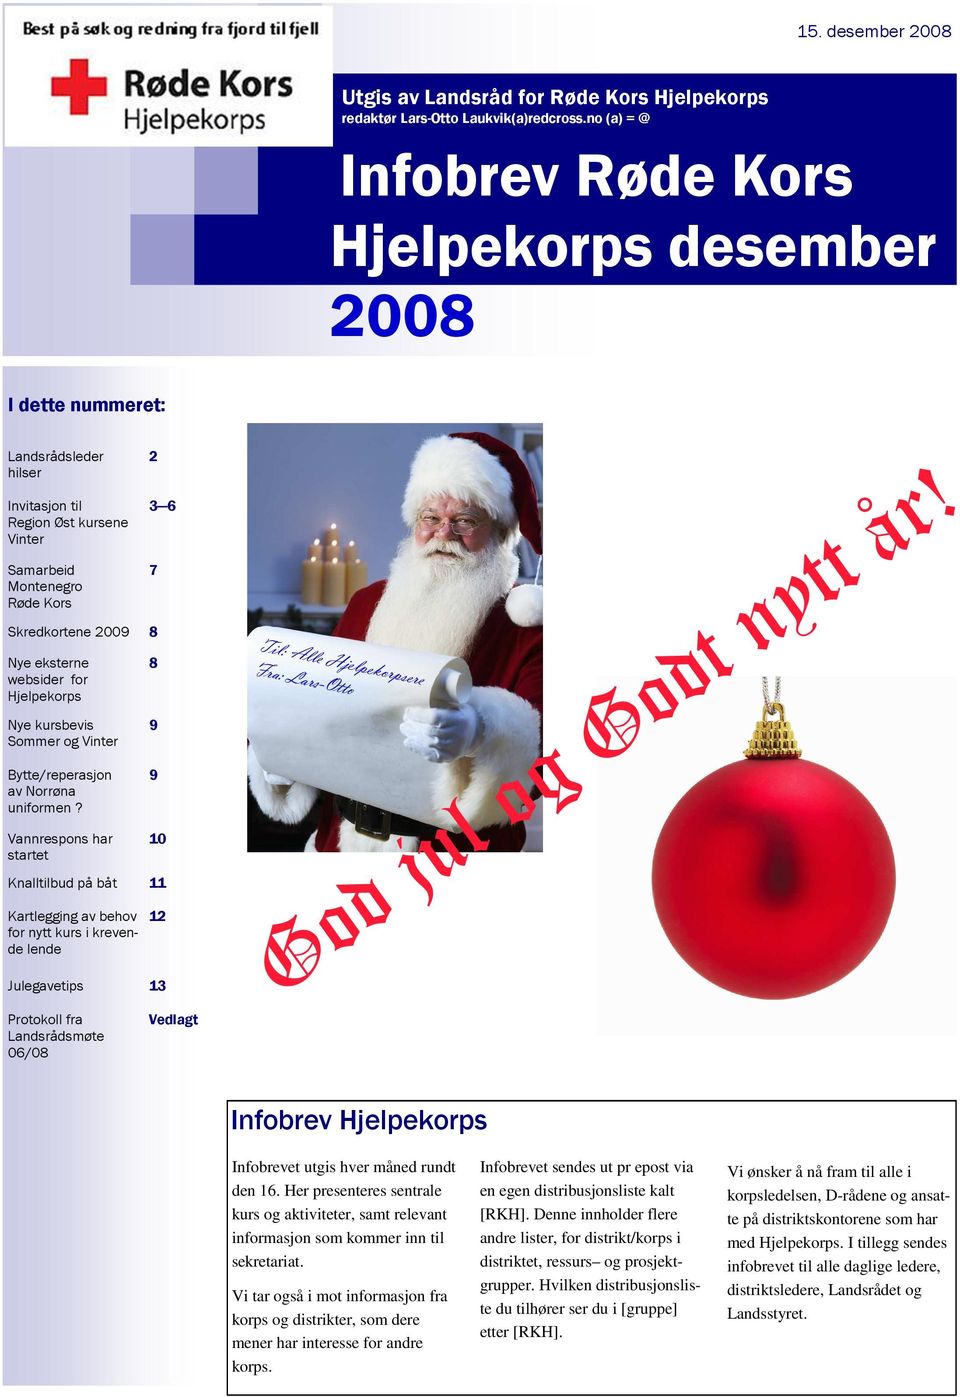 eksterne websider for Hjelpekorps Nye kursbevis Sommer og Vinter Bytte/reperasjon av Norrøna uniformen?